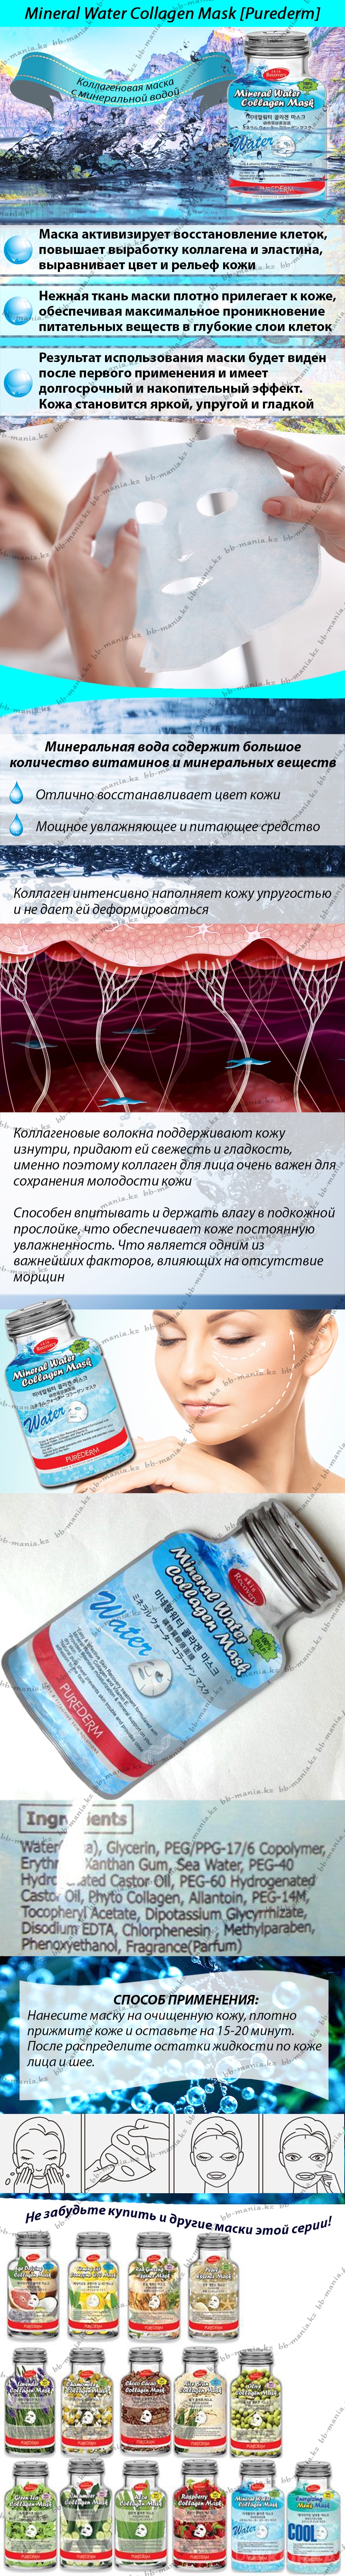 Mineral-Water-Collagen-Mask-[Purederm]-bbmania-min